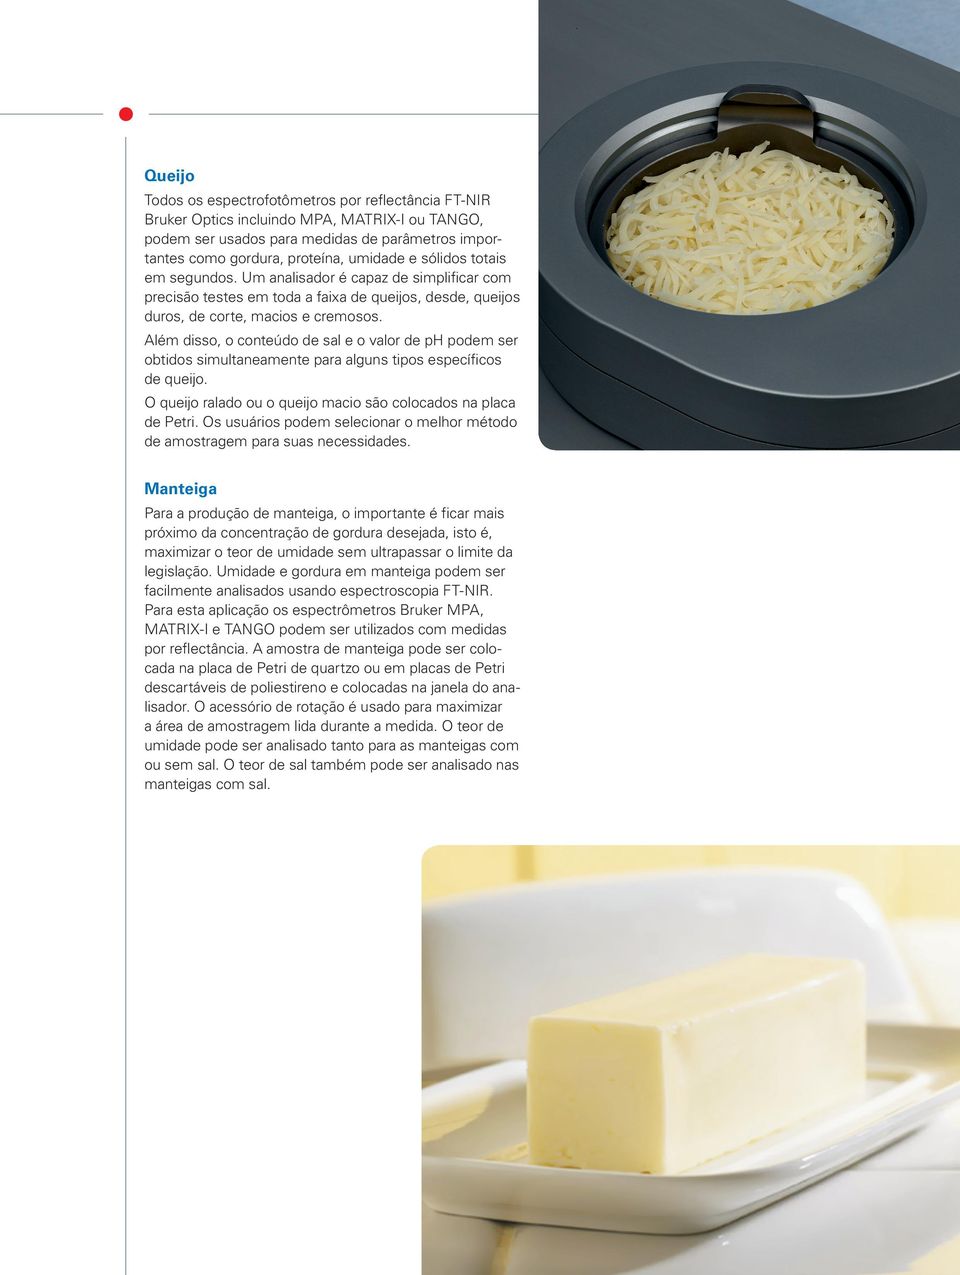 Além disso, o conteúdo de sal e o valor de ph podem ser obtidos simultaneamente para alguns tipos específicos de queijo. O queijo ralado ou o queijo macio são colocados na placa de Petri.